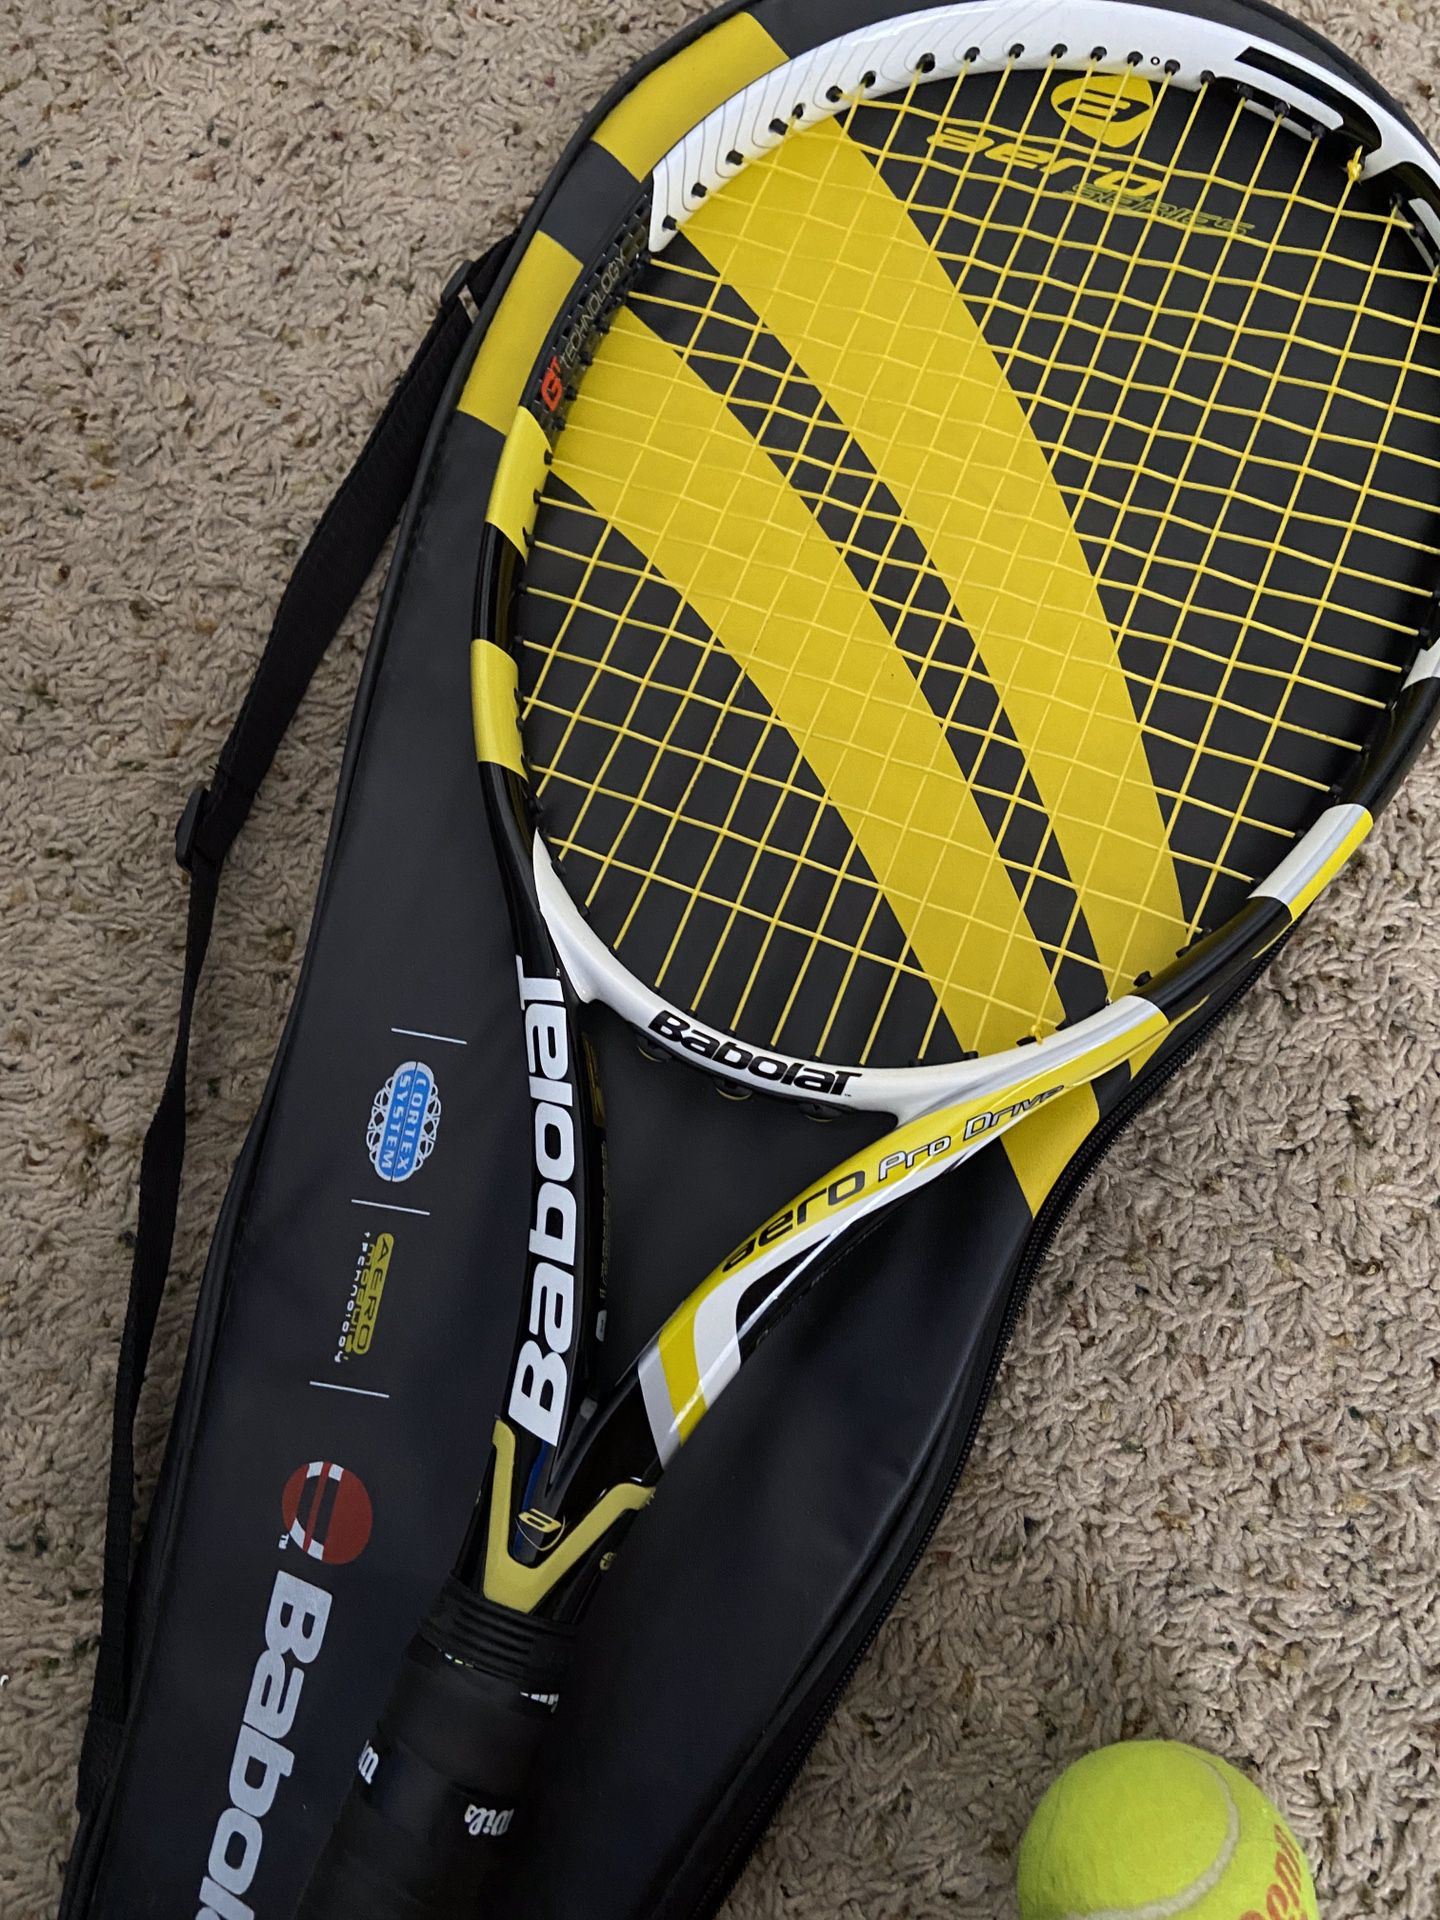 NEW Babolat Tennis Racket